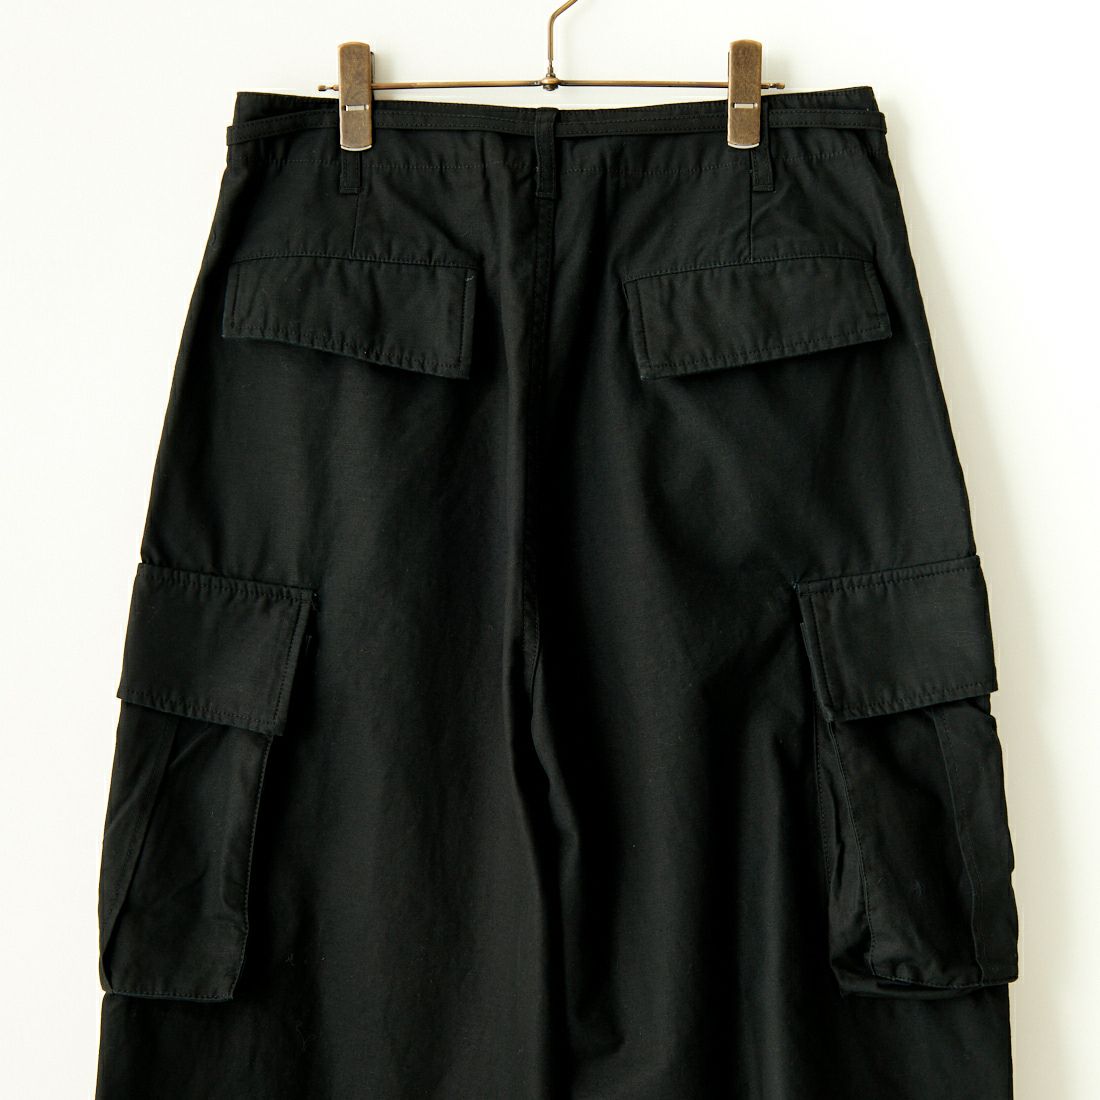 Jeans Factory Clothes [ジーンズファクトリークローズ] ワイドBDUカーゴパンツ [JFC-233-080] BLACK